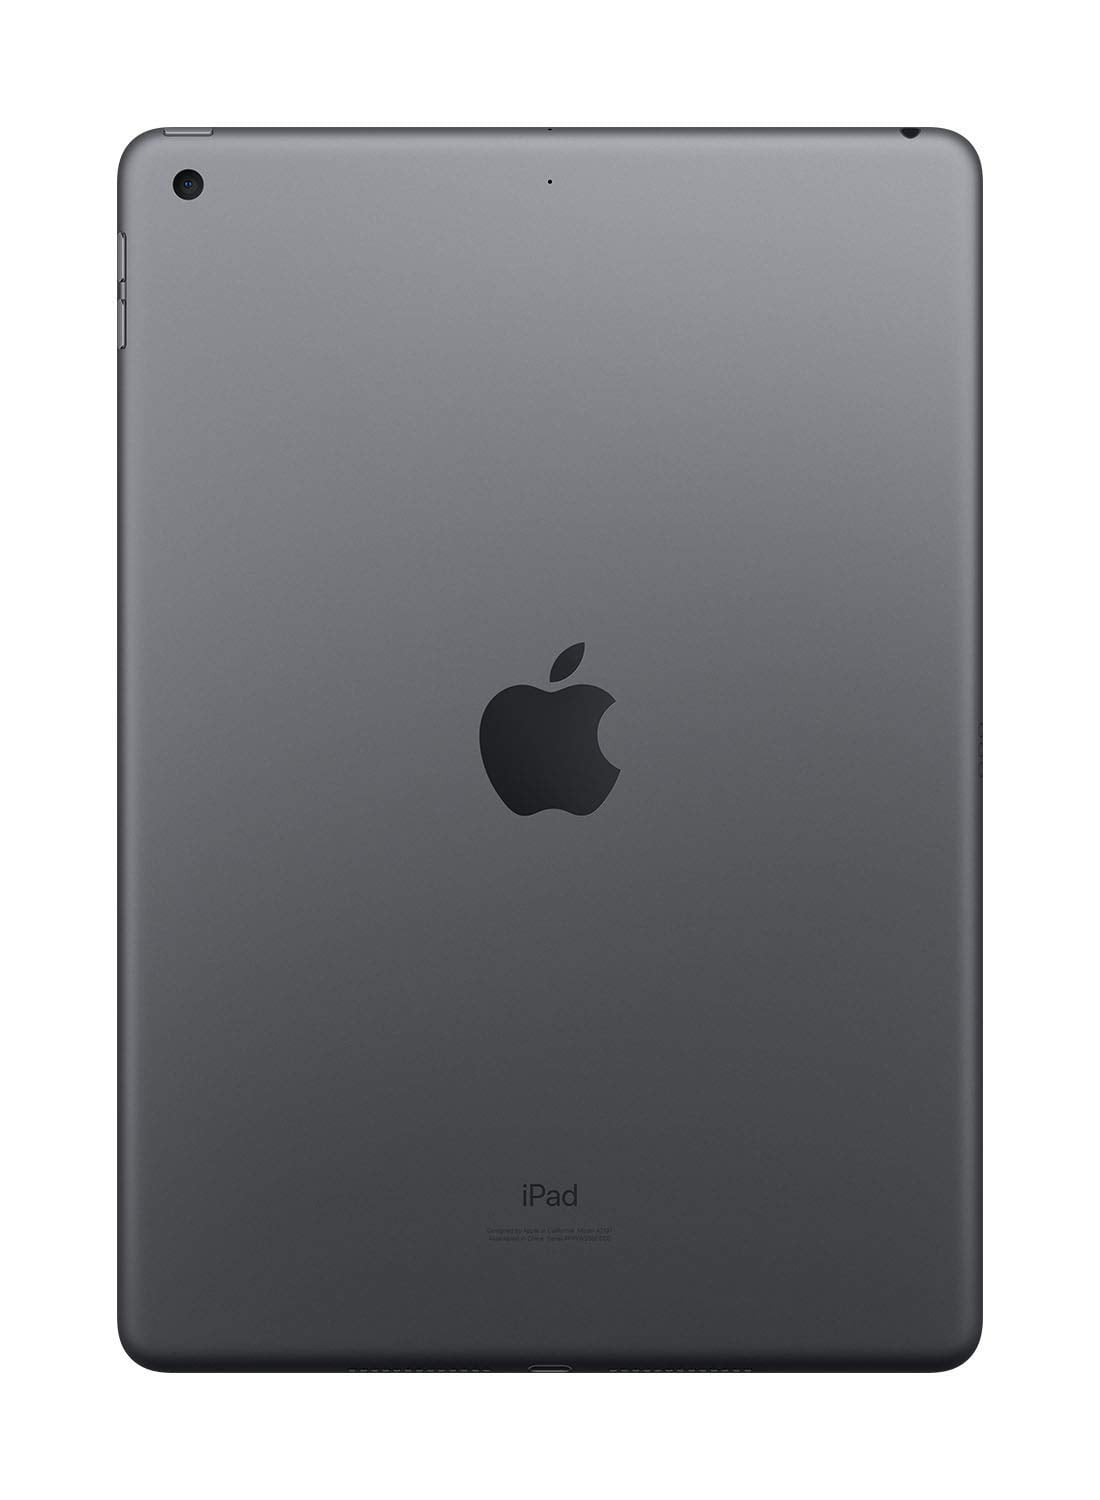 Apple iPad第7世代32GB グレータブレット